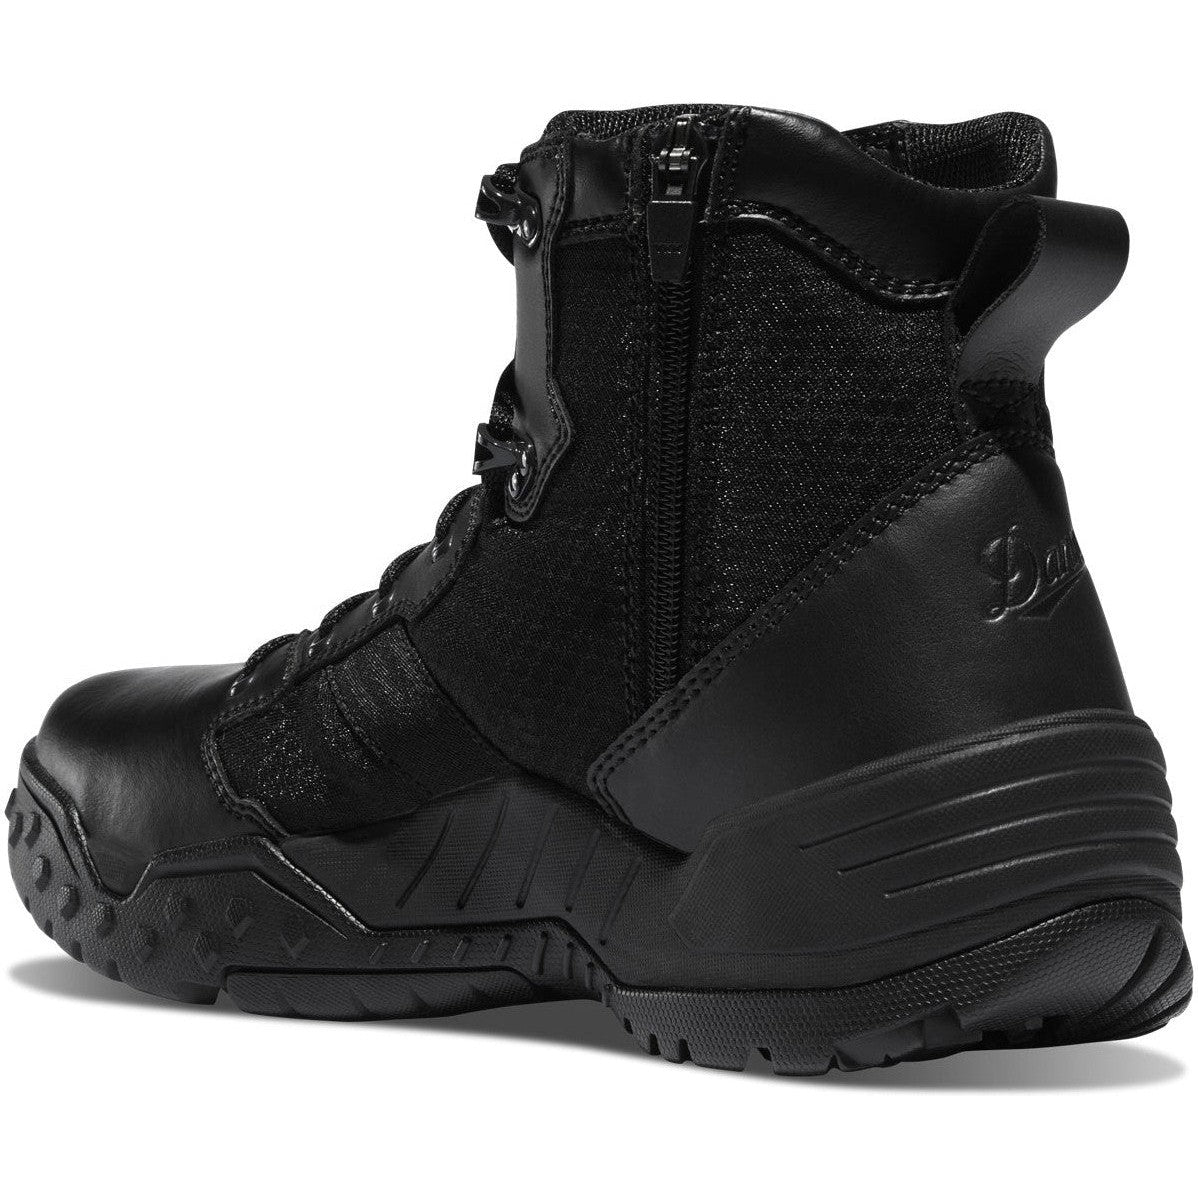 Danner Men's Scorch 6" Side Zip Slip Resistant Duty Boot -Black- 25730  - Overlook Boots